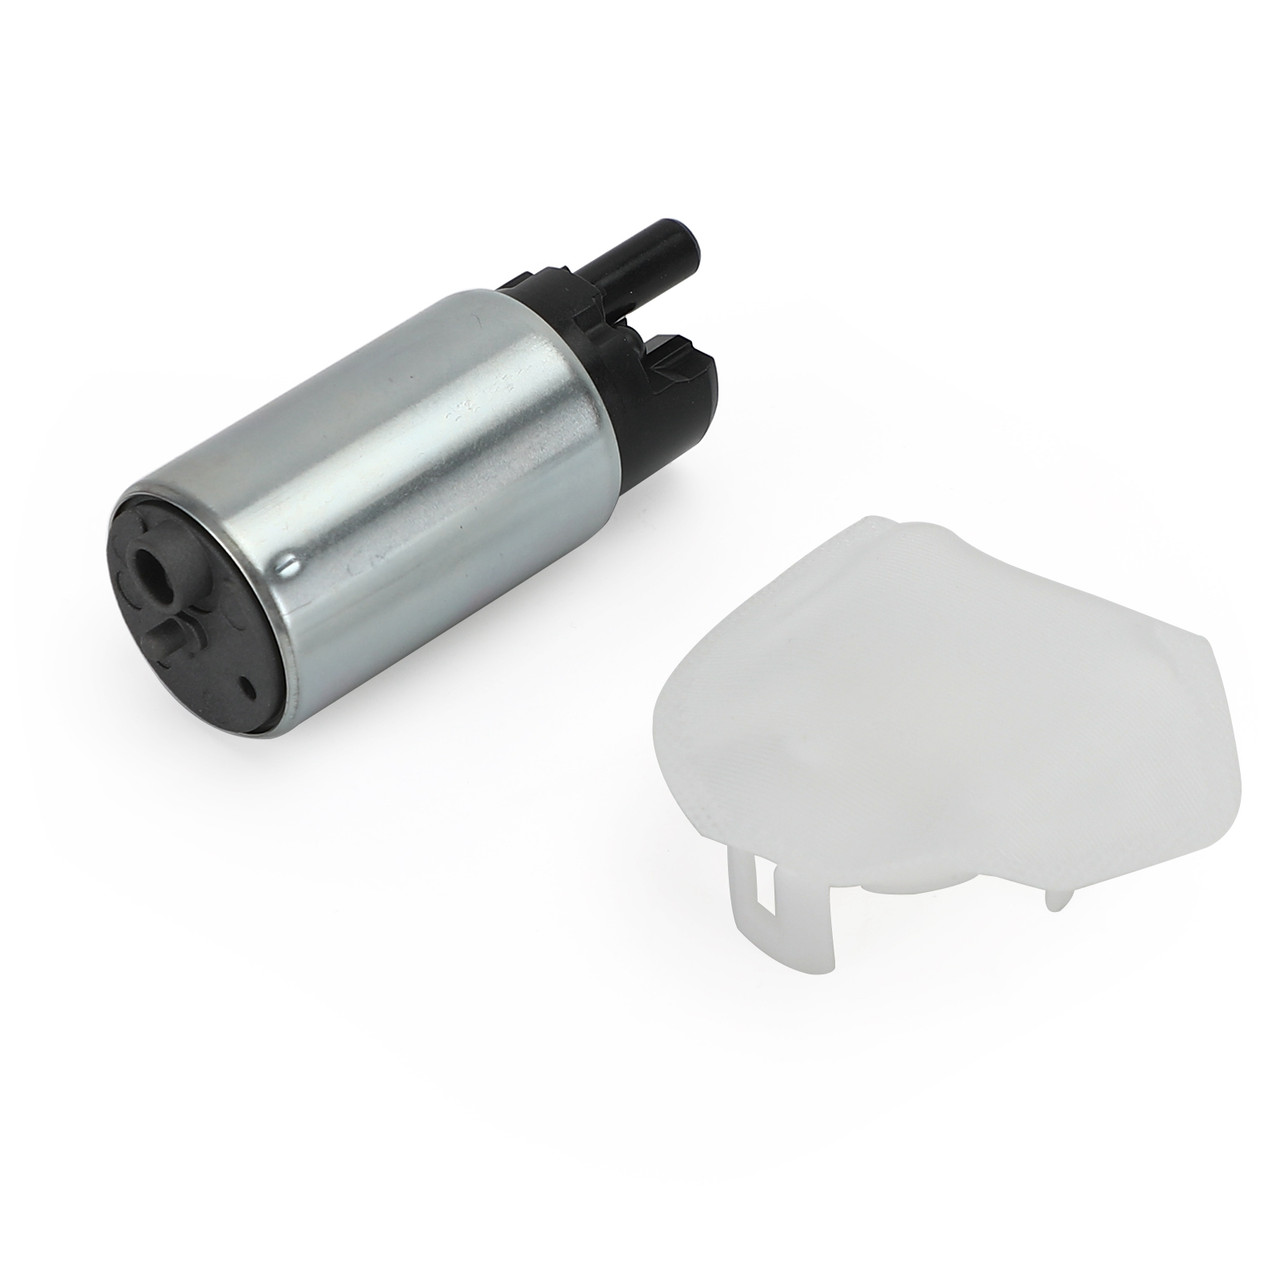 Replacement Fuel Pump Kit w/ Filter Fit for Honda TRX520 TRX520FA5 TRX520FM1 20-21 SXS500M2 Pioneer 500 15-22